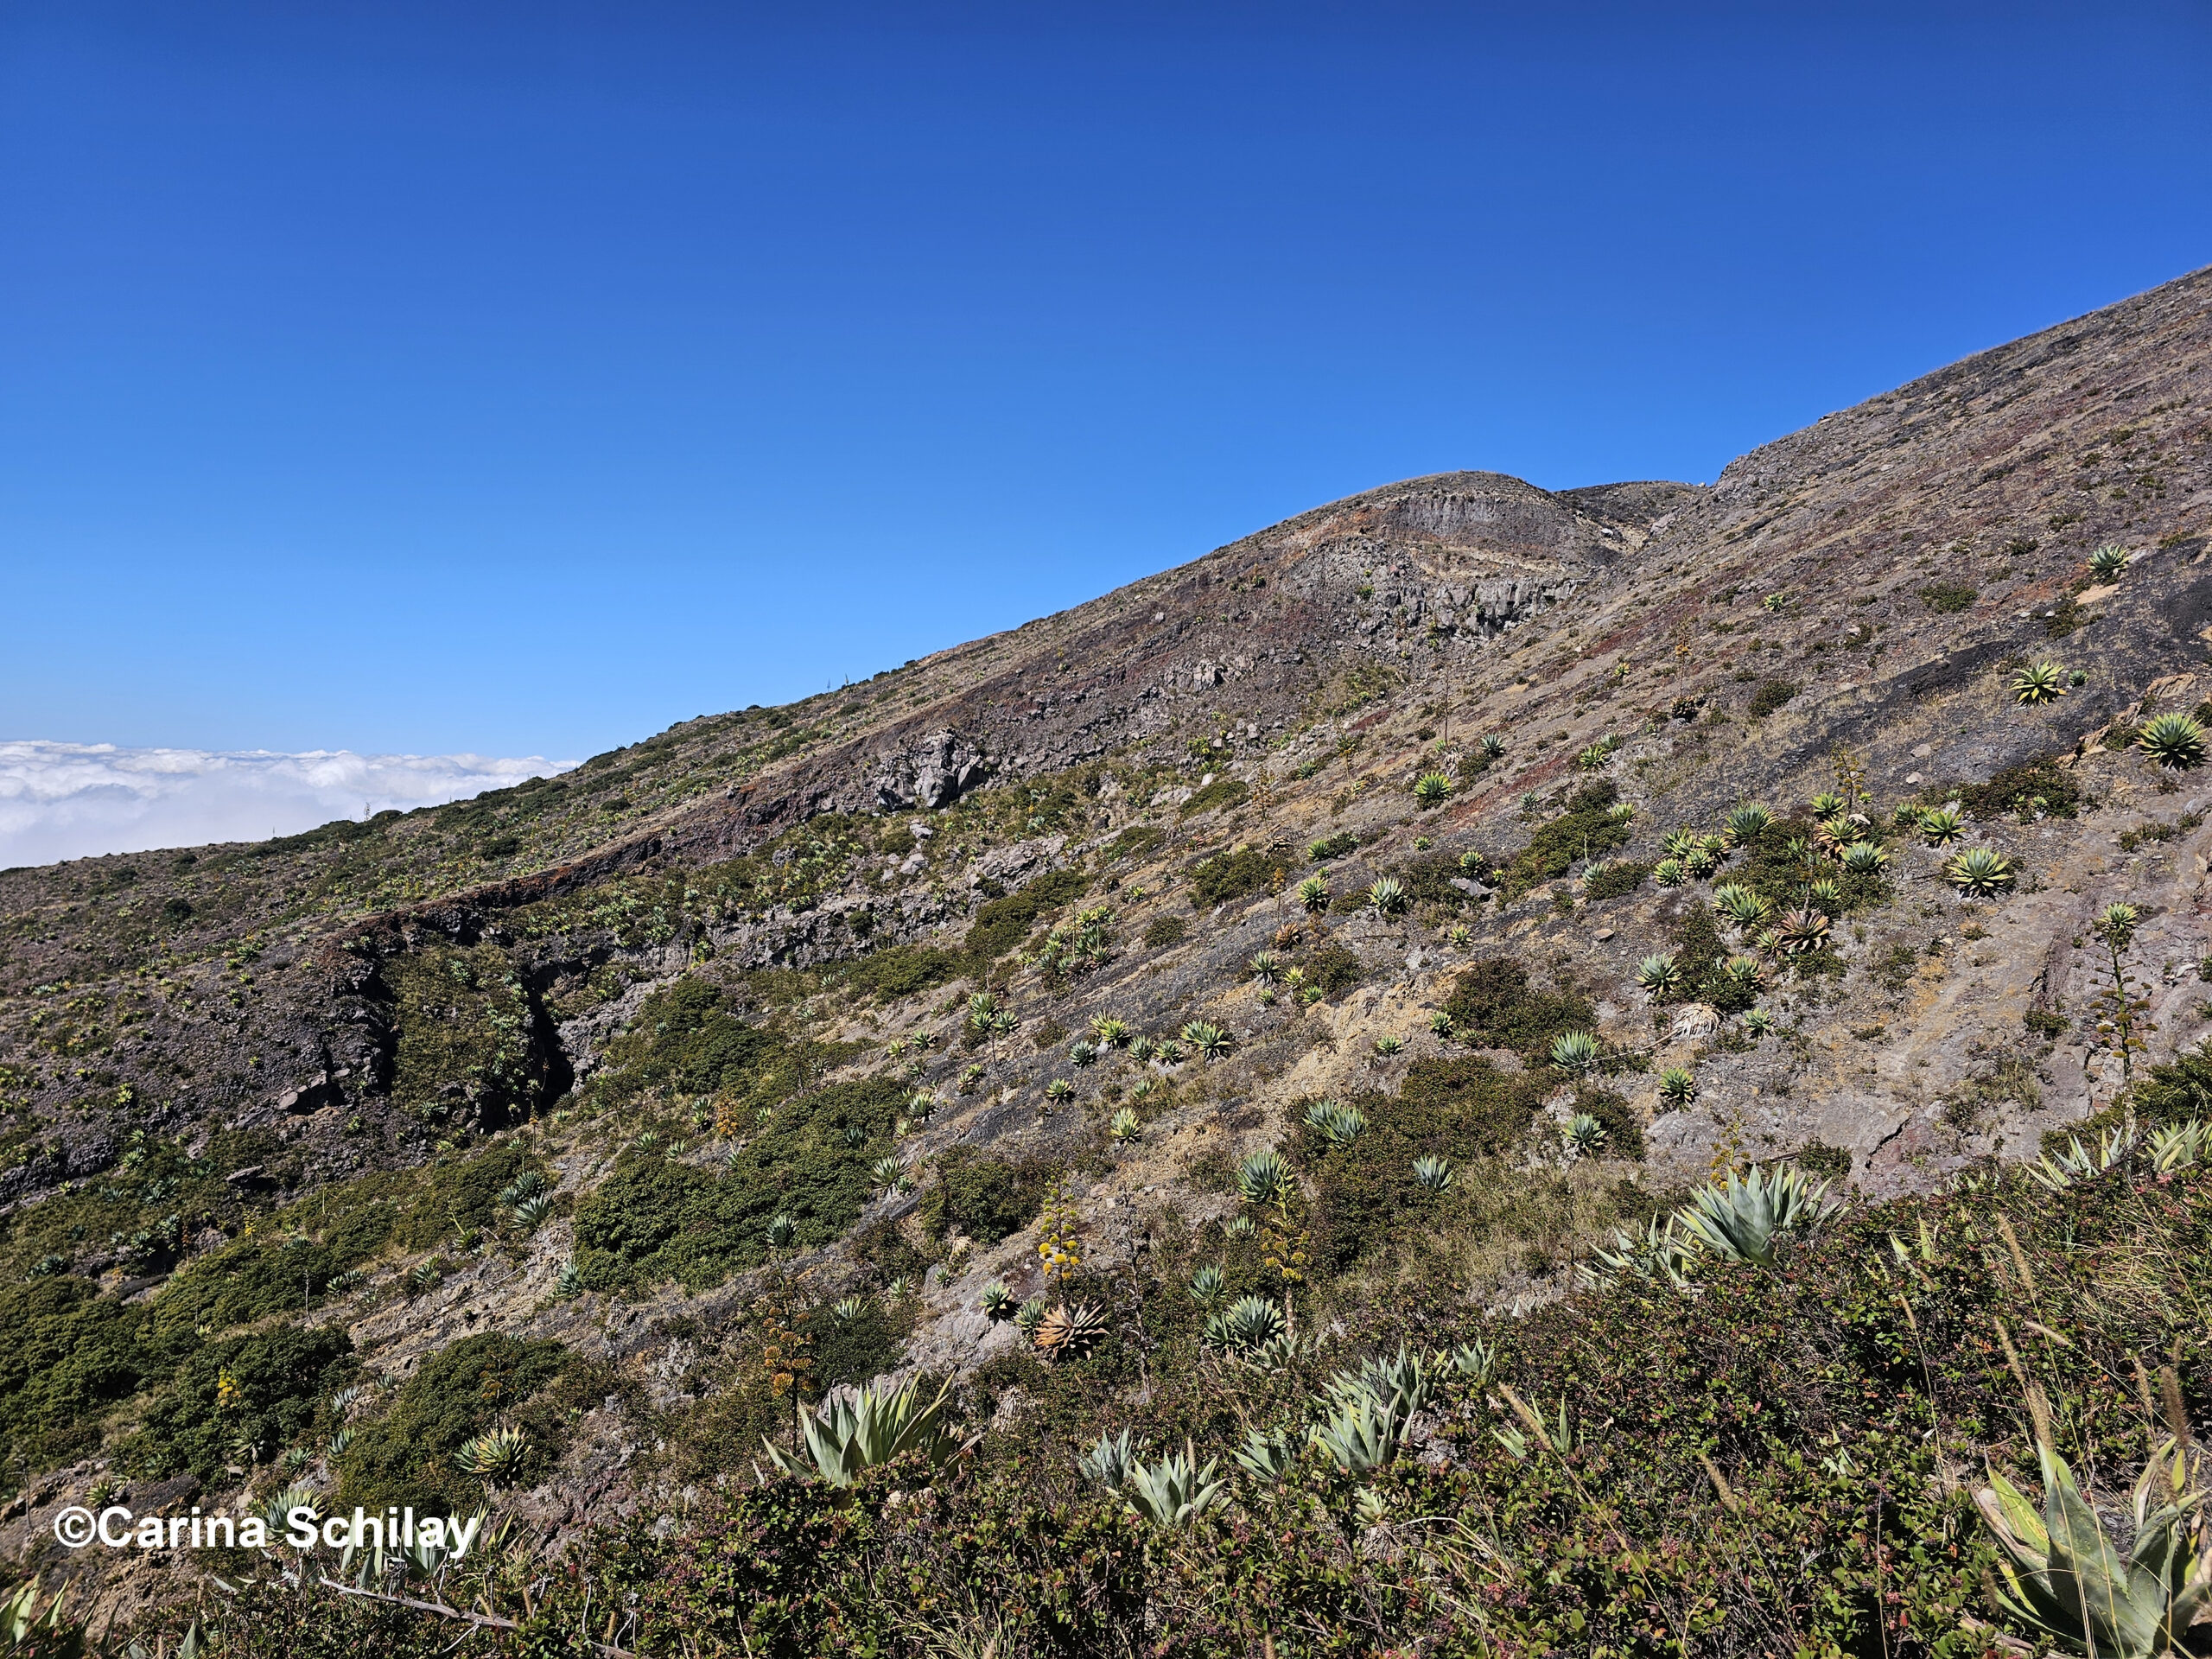 Karger Hang des Santa Ana Vulkans kurz vor dem Krater, ein Zeugnis der Naturgewalten